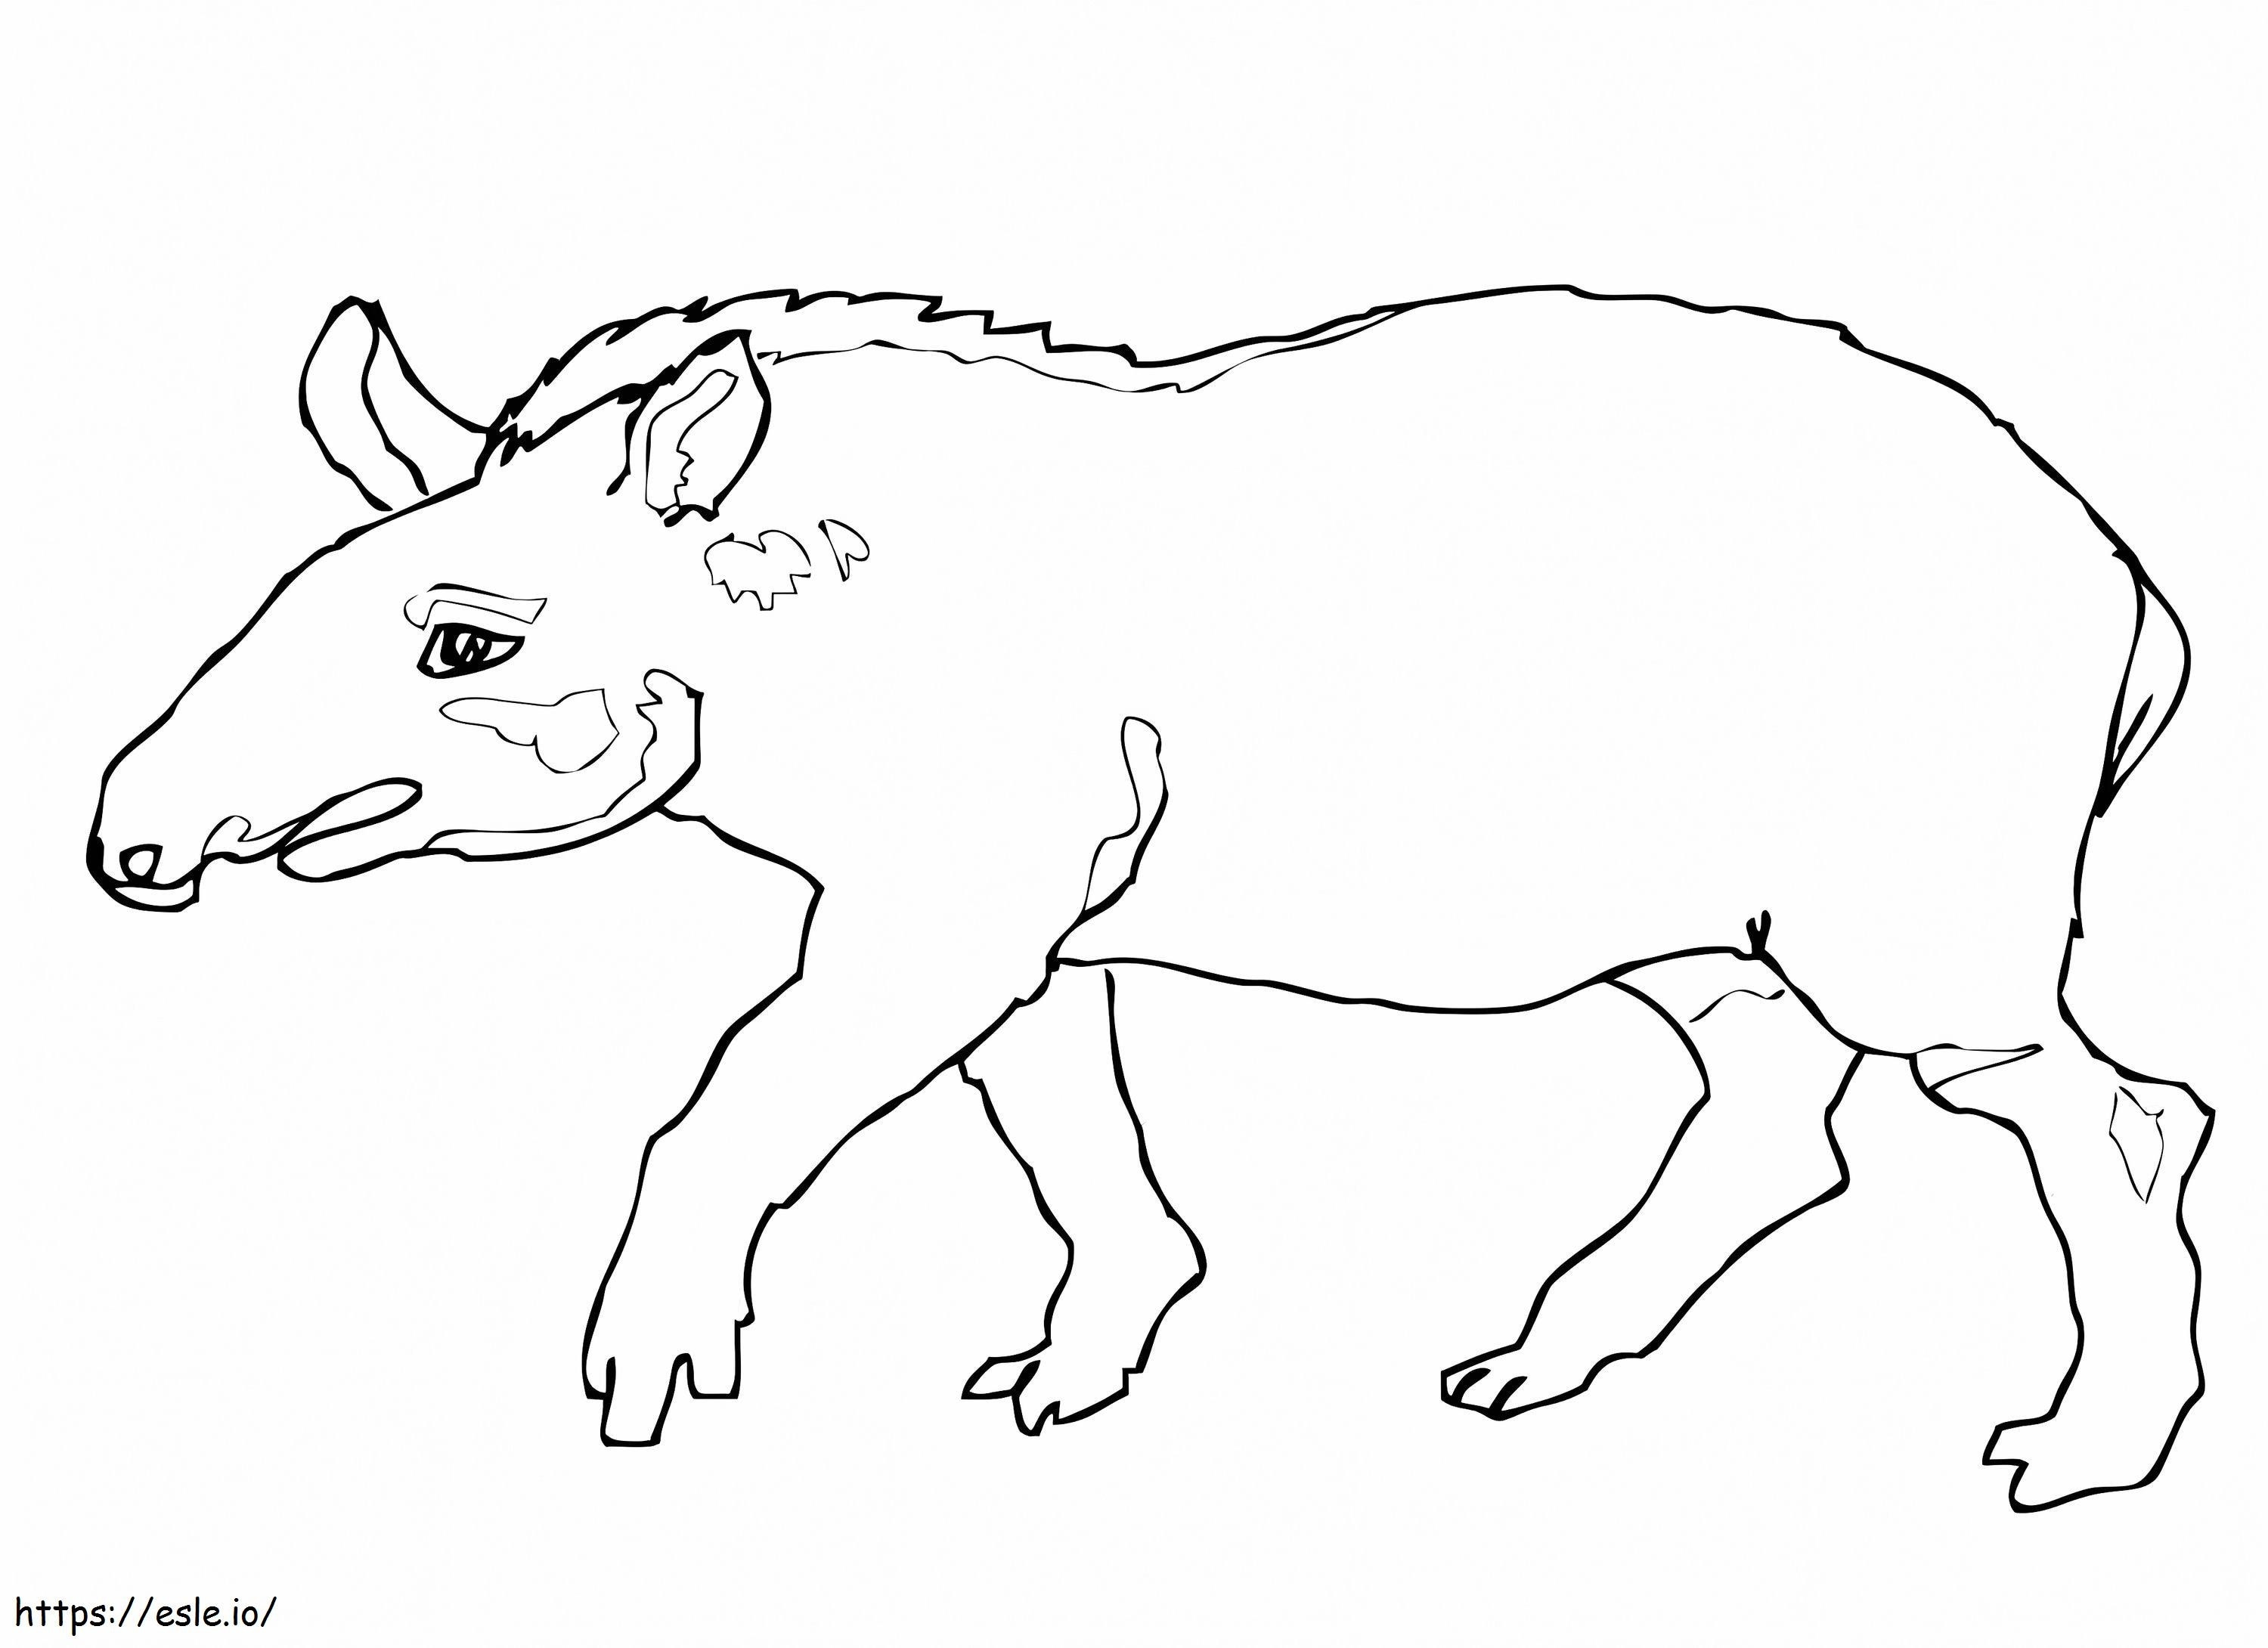 Brazilian Tapir coloring page